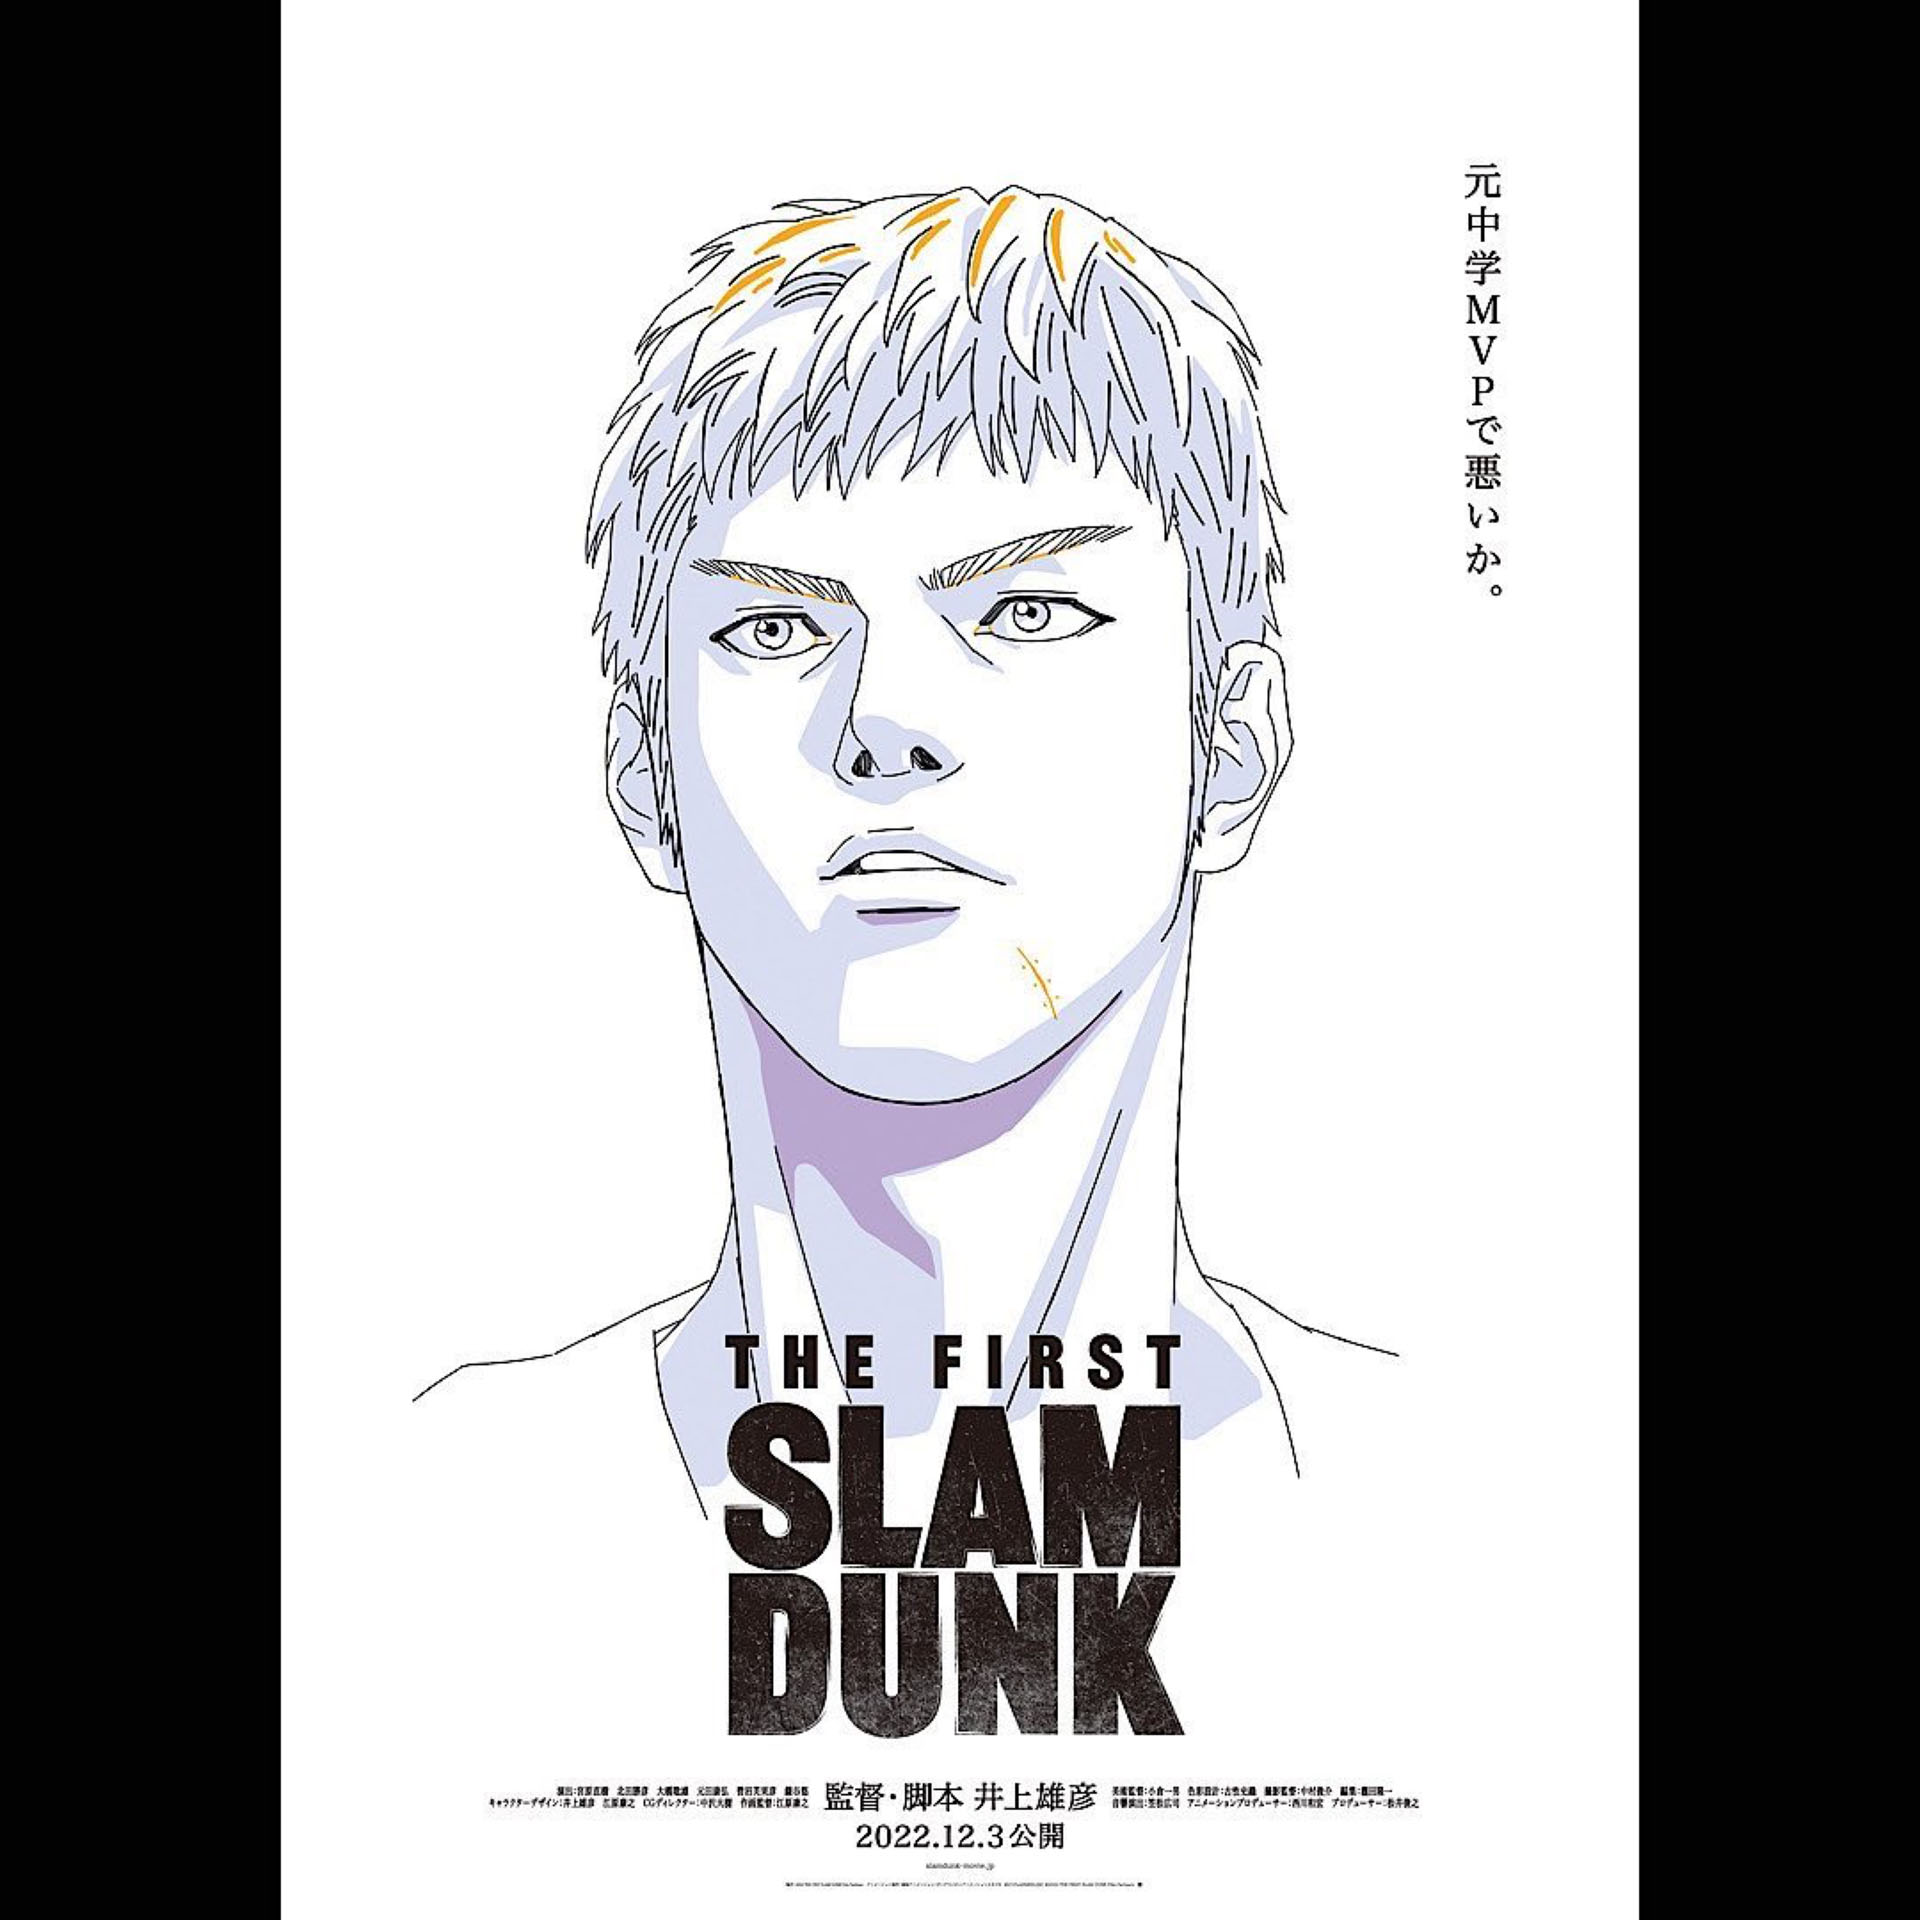 映画 The First Slam Dunk ビジュアルボードが期間限定で設置 Fly Basketball Culture Magazine バスケットボール ファッション カルチャー マガジン